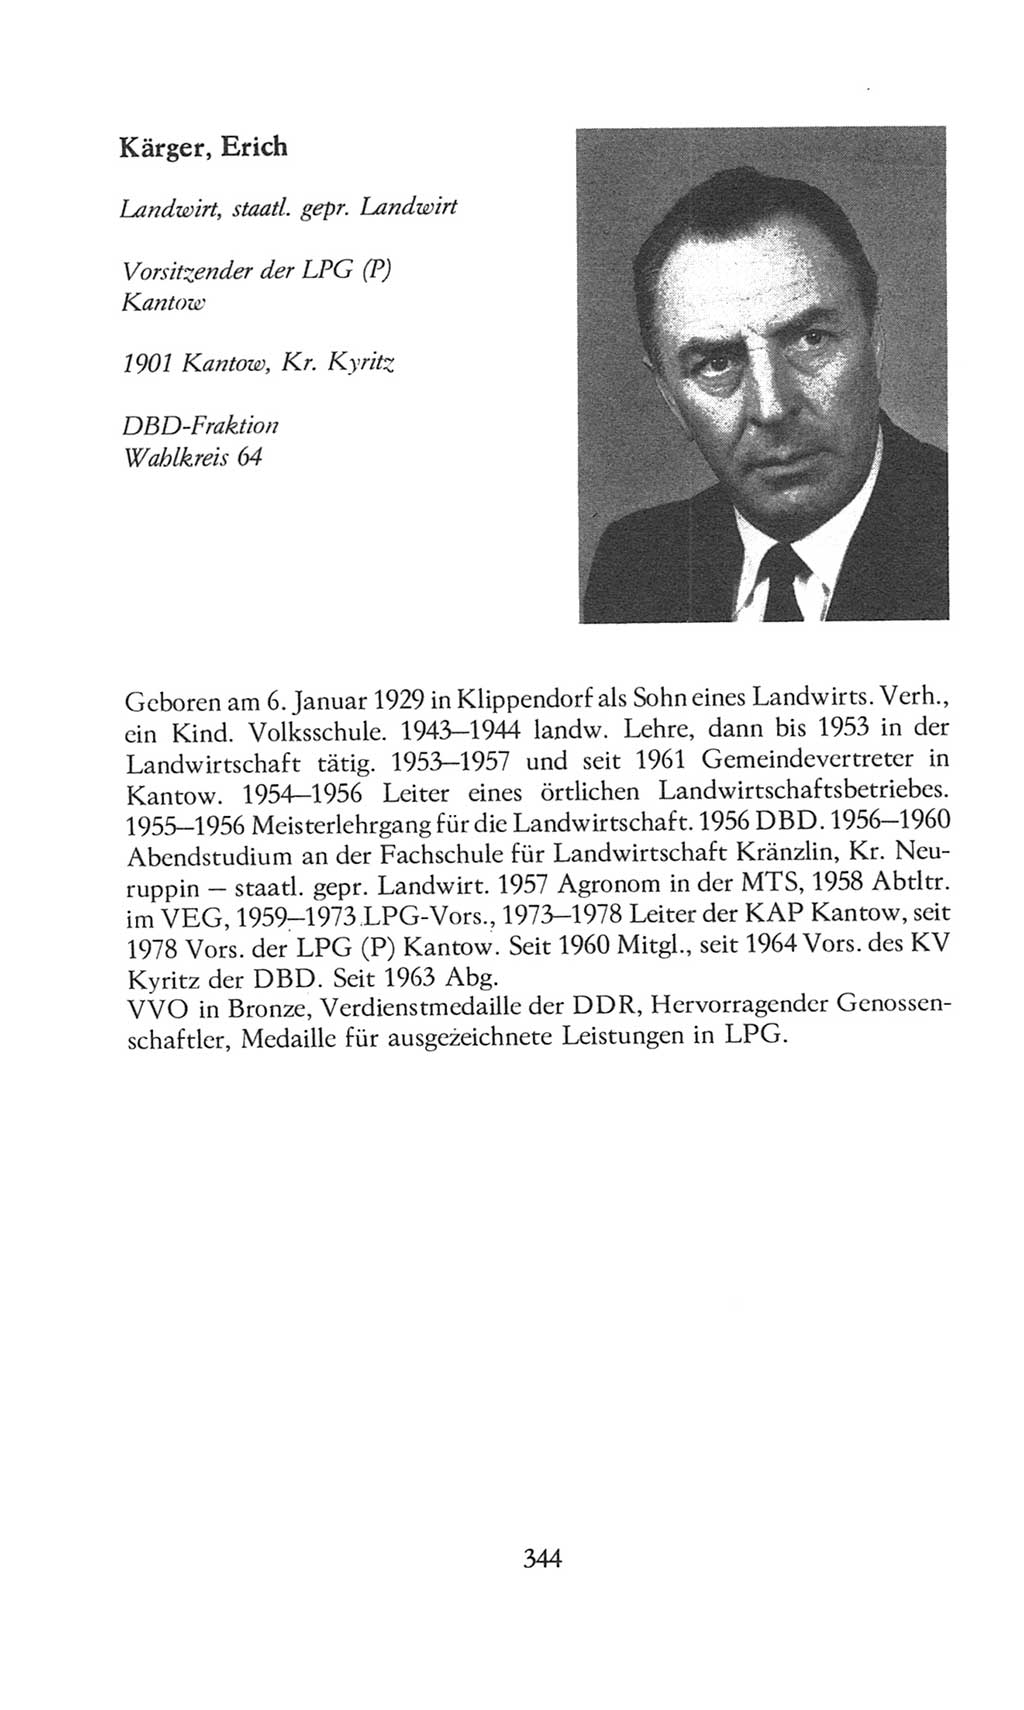 Volkskammer (VK) der Deutschen Demokratischen Republik (DDR), 8. Wahlperiode 1981-1986, Seite 344 (VK. DDR 8. WP. 1981-1986, S. 344)